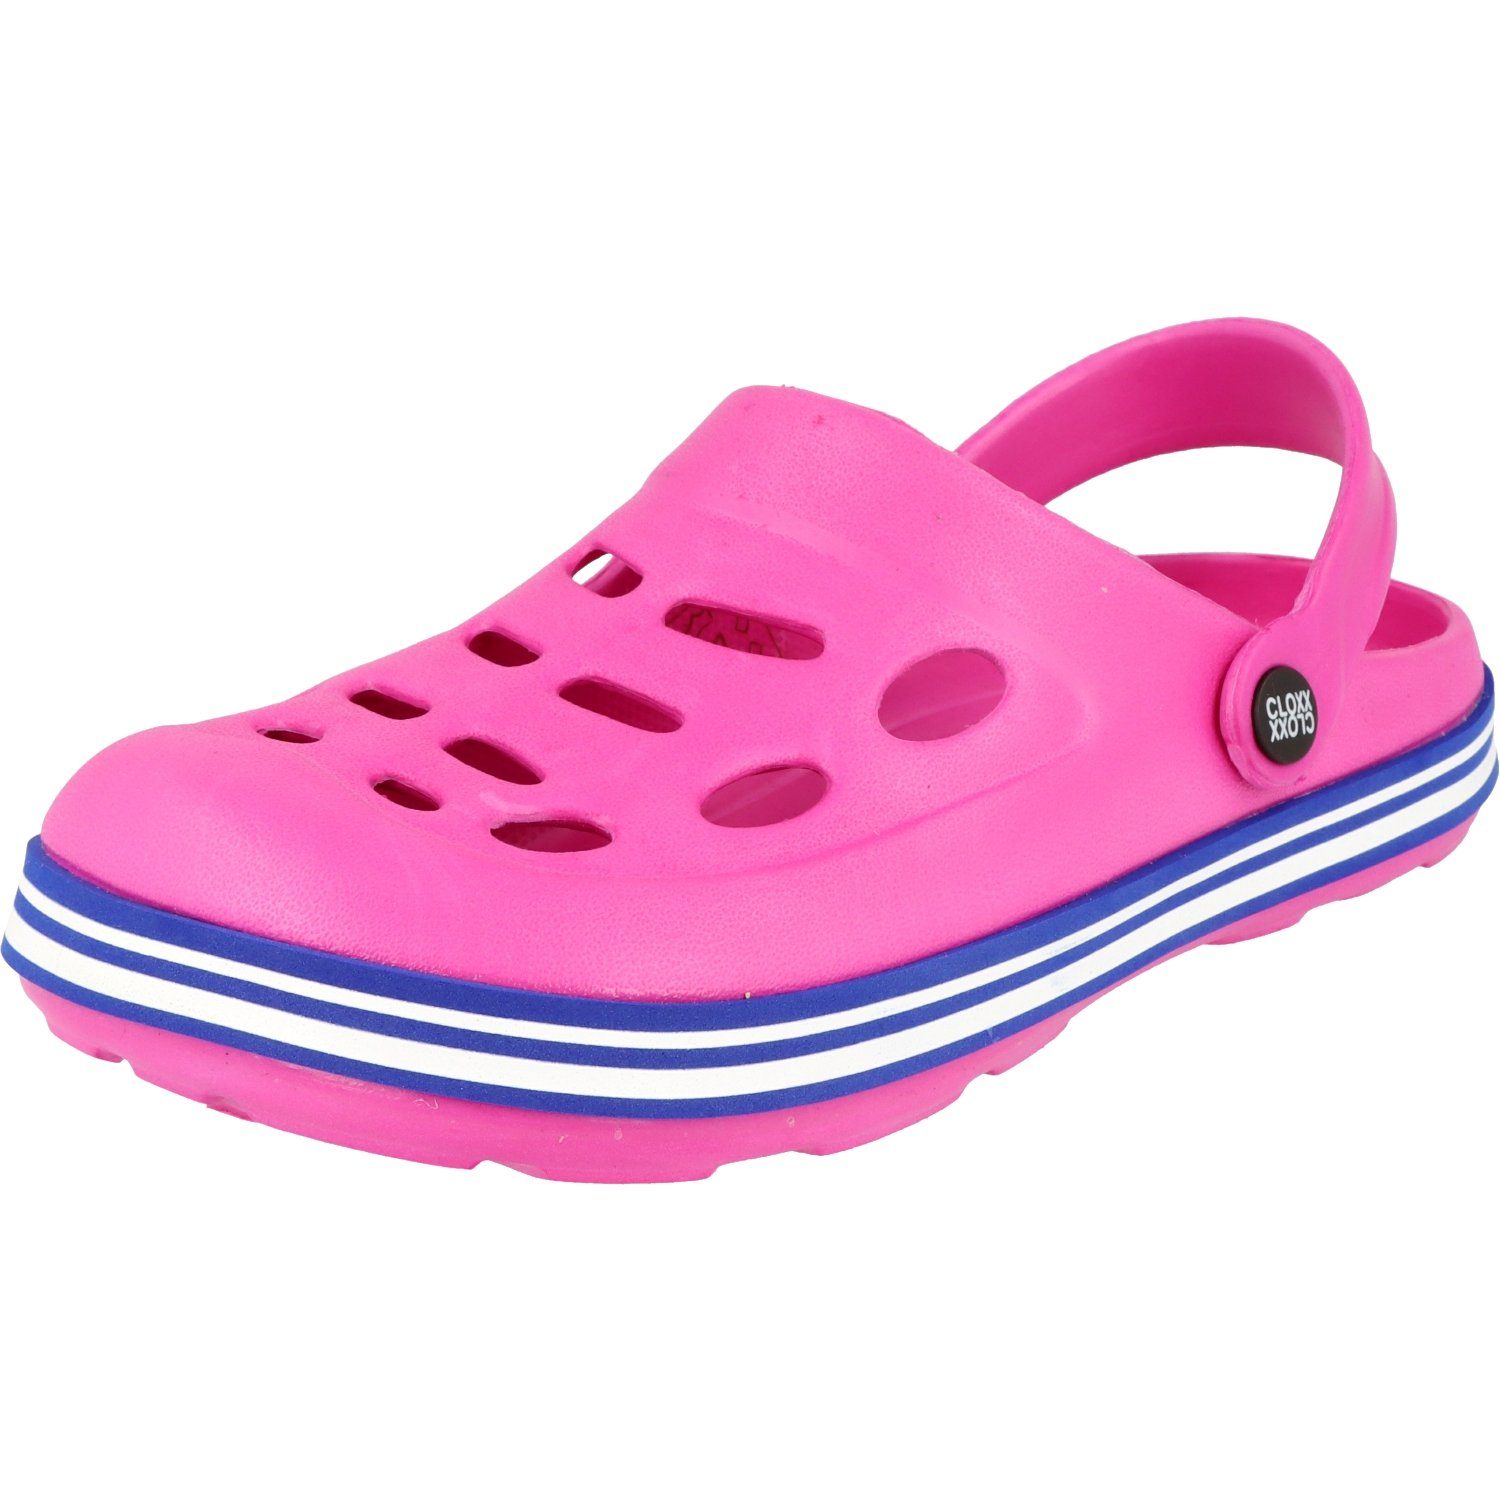 Cloxx Damen/Mädchen Schuhe R88410.33 Gummi Clogs Pantoletten Hausschuhe Pink Clog